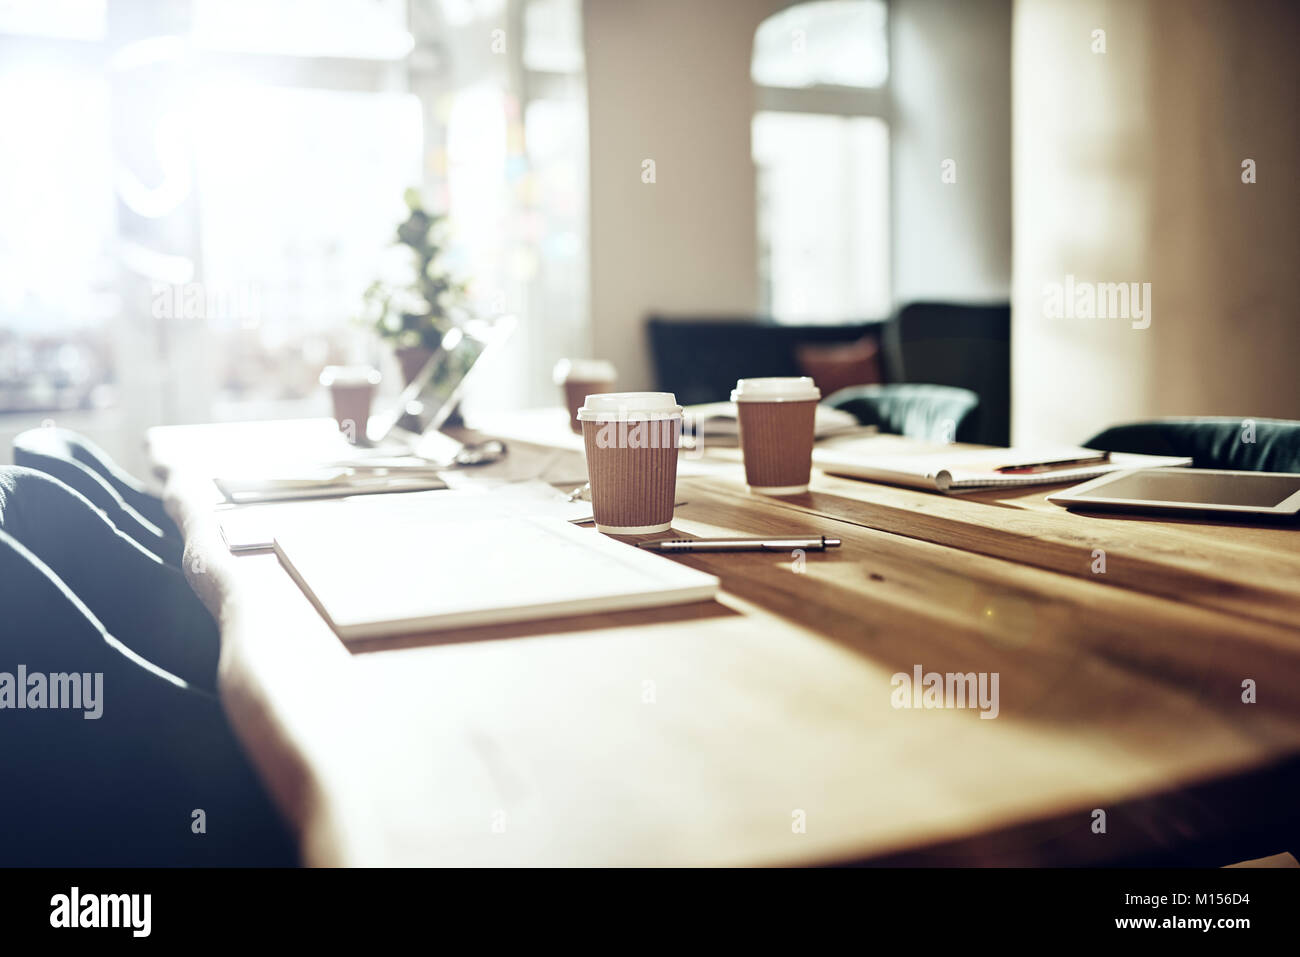 Innenraum eines leeren Tisch in einem Büro nach Stunden mit einem Laptop, takaway Kaffeetassen und Schreibarbeit abgedeckt Stockfoto